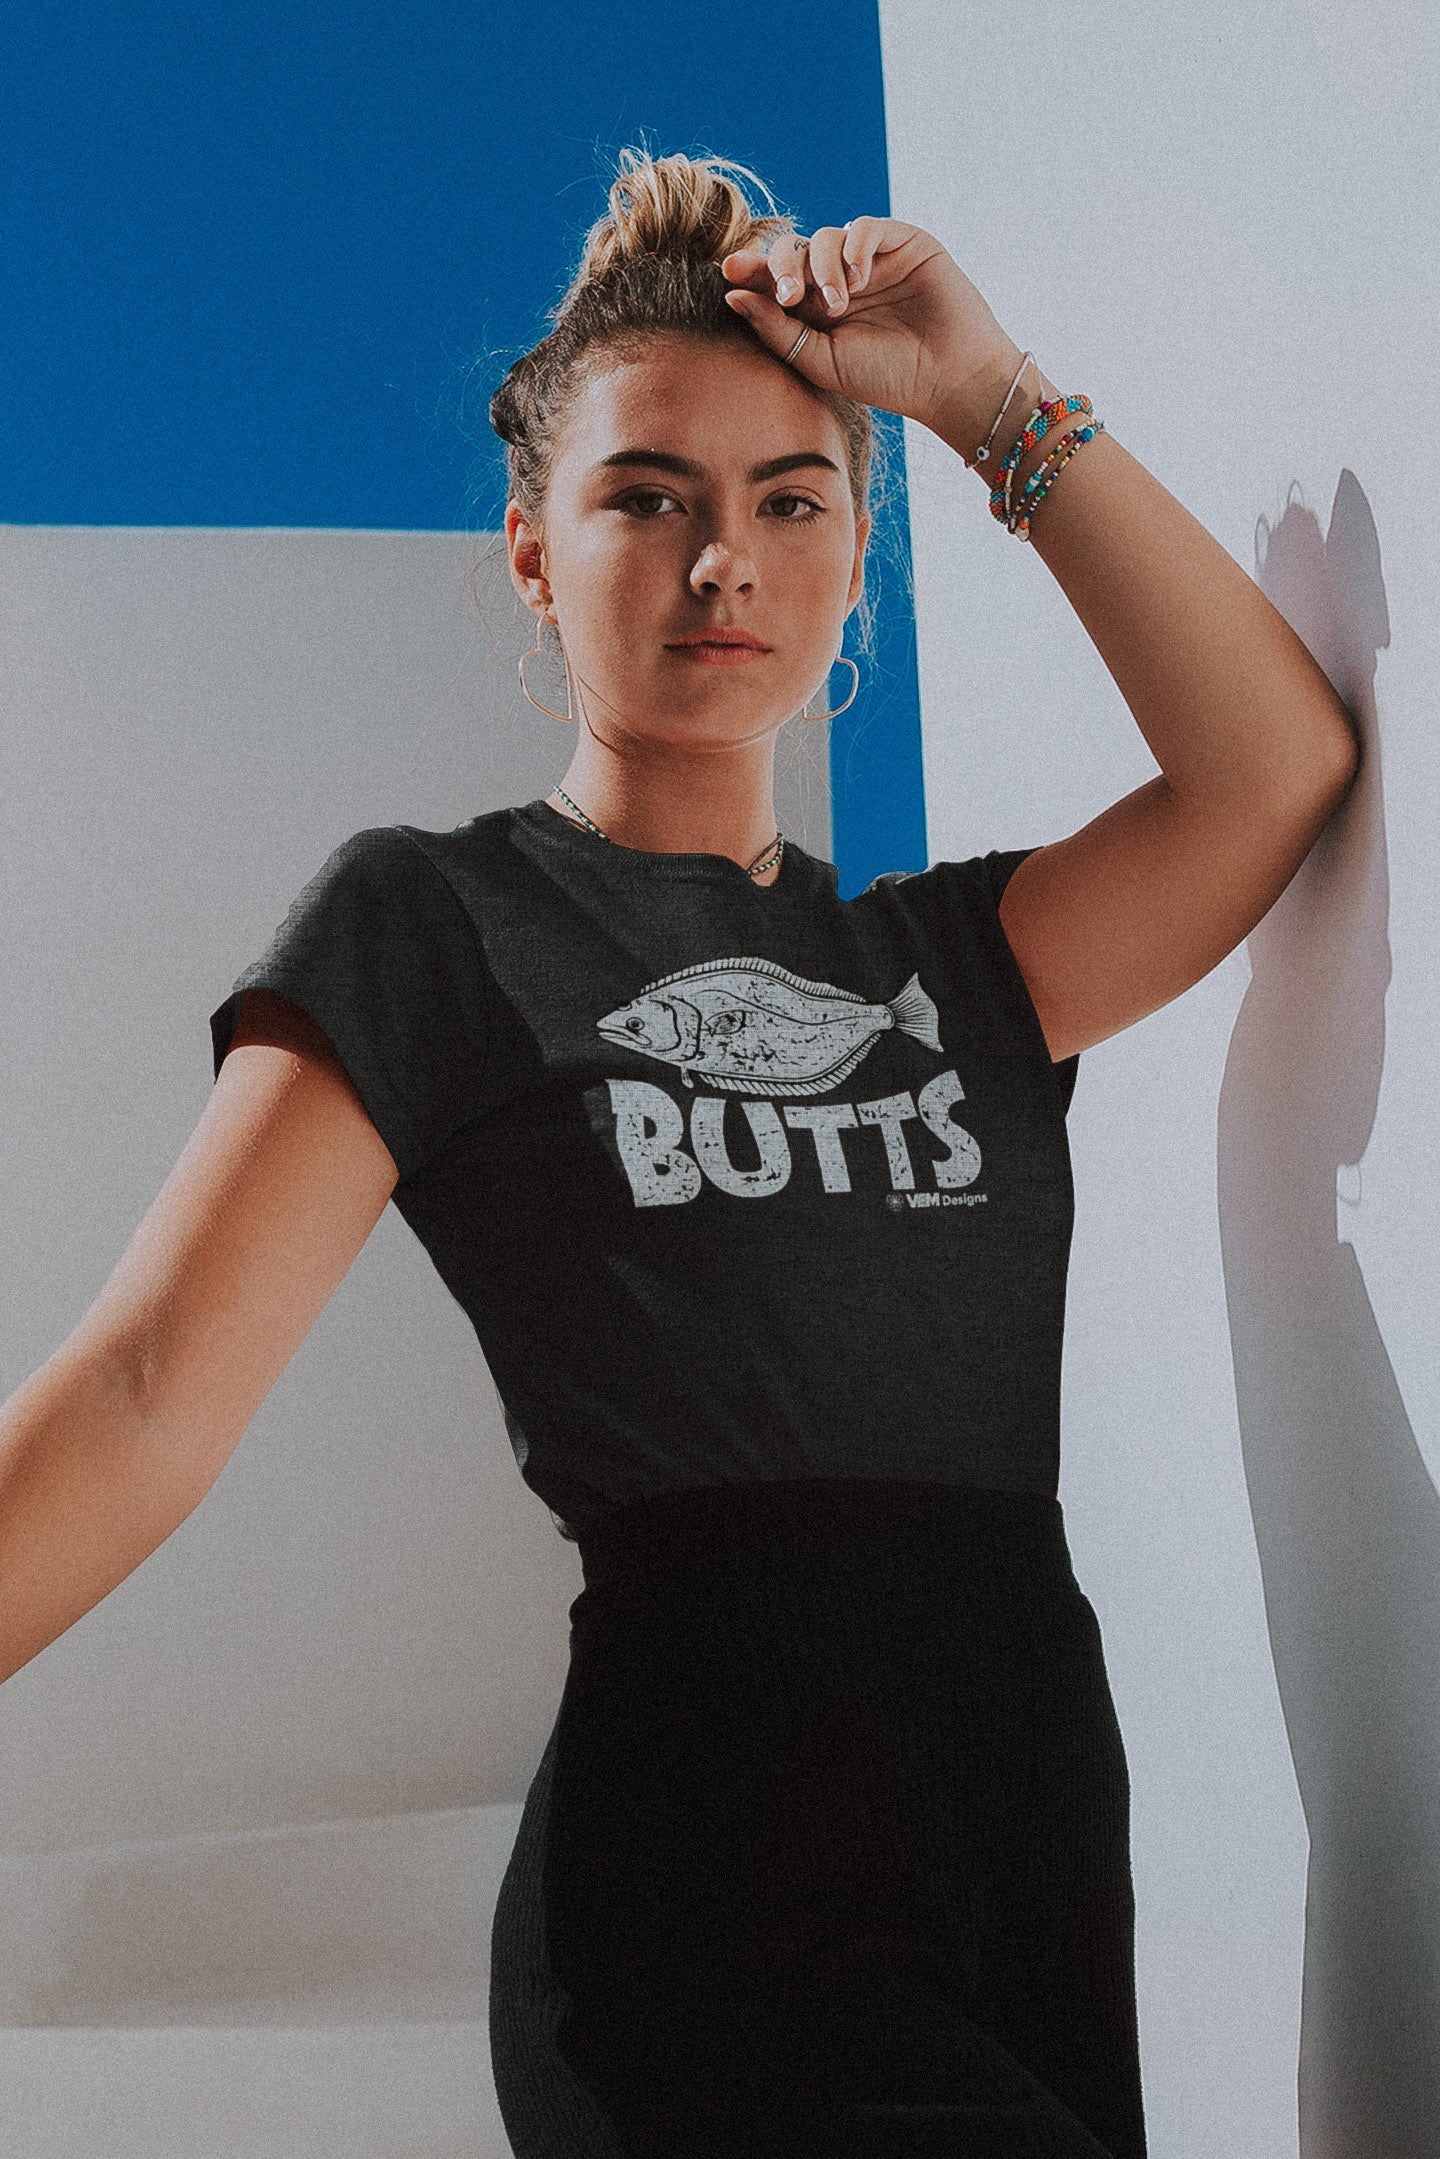 Butts - Women's